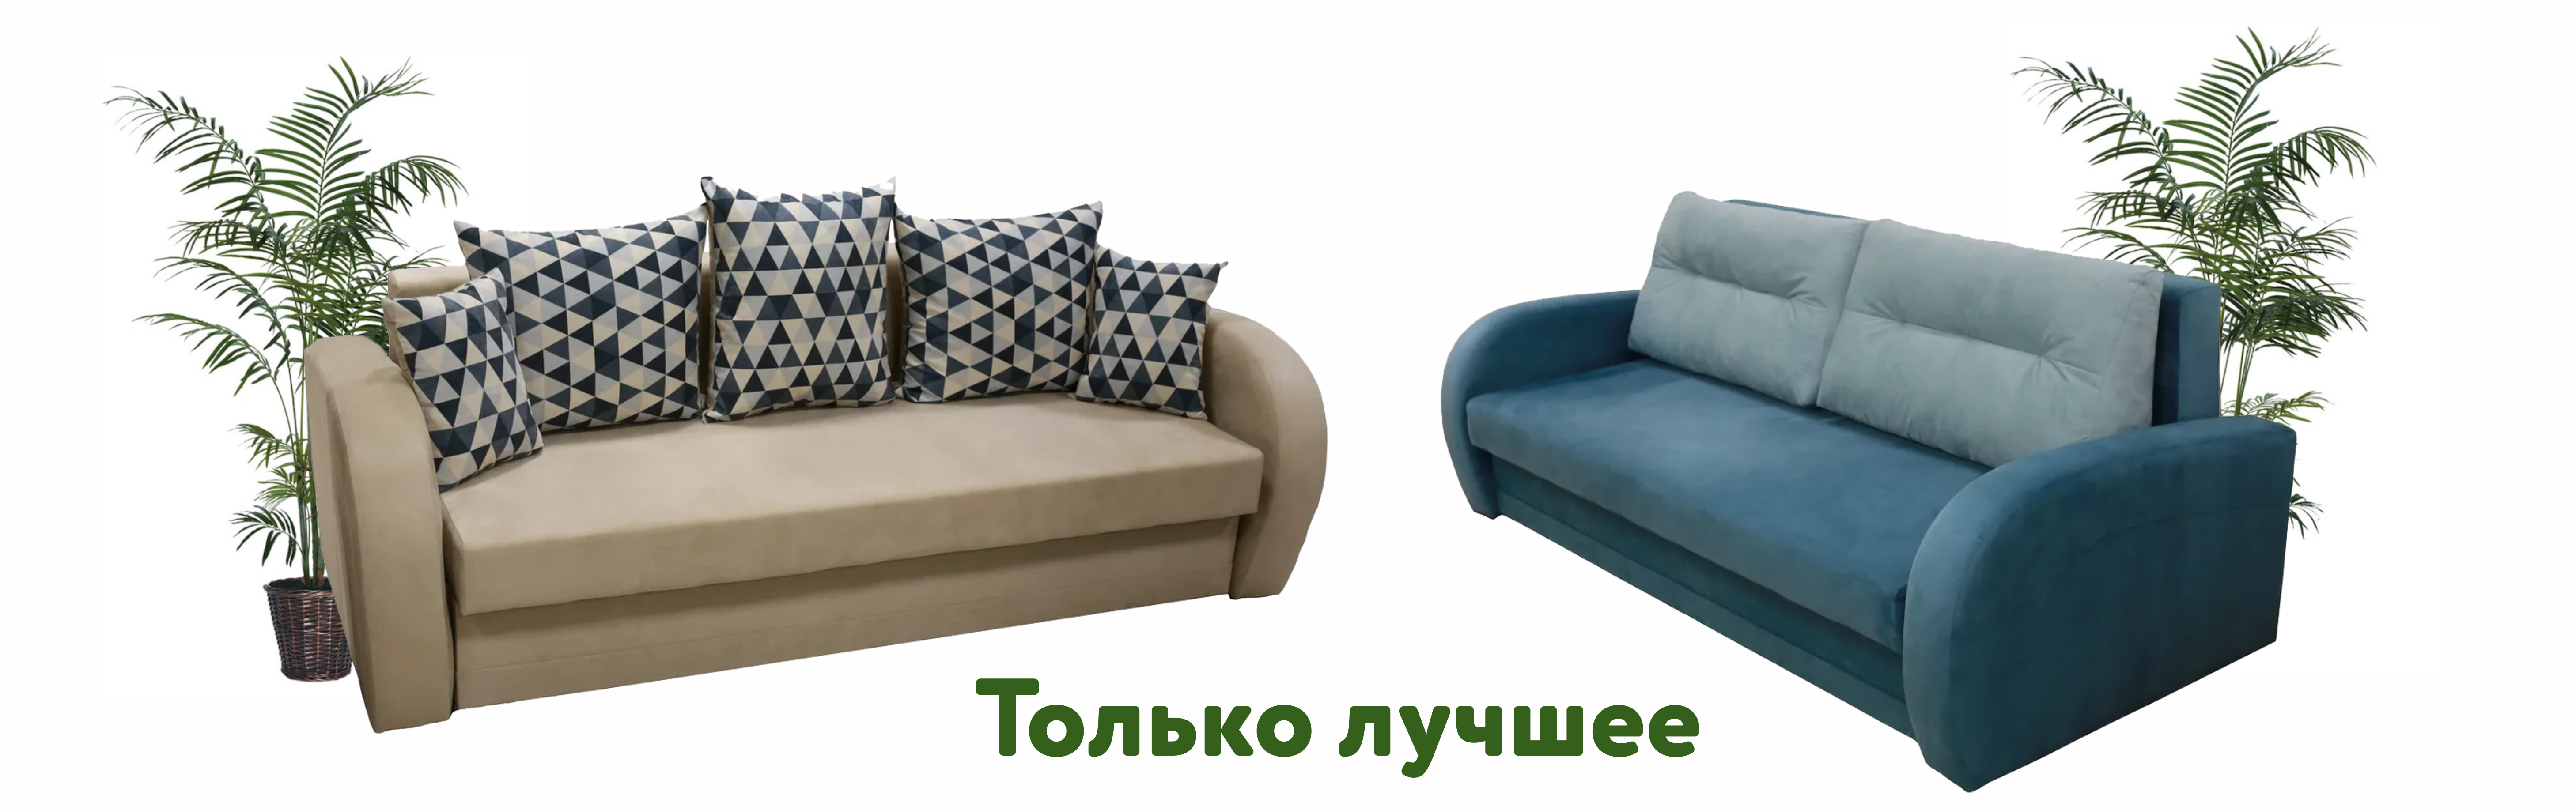 Мебельные Магазины Калининграда С Фото И Ценами